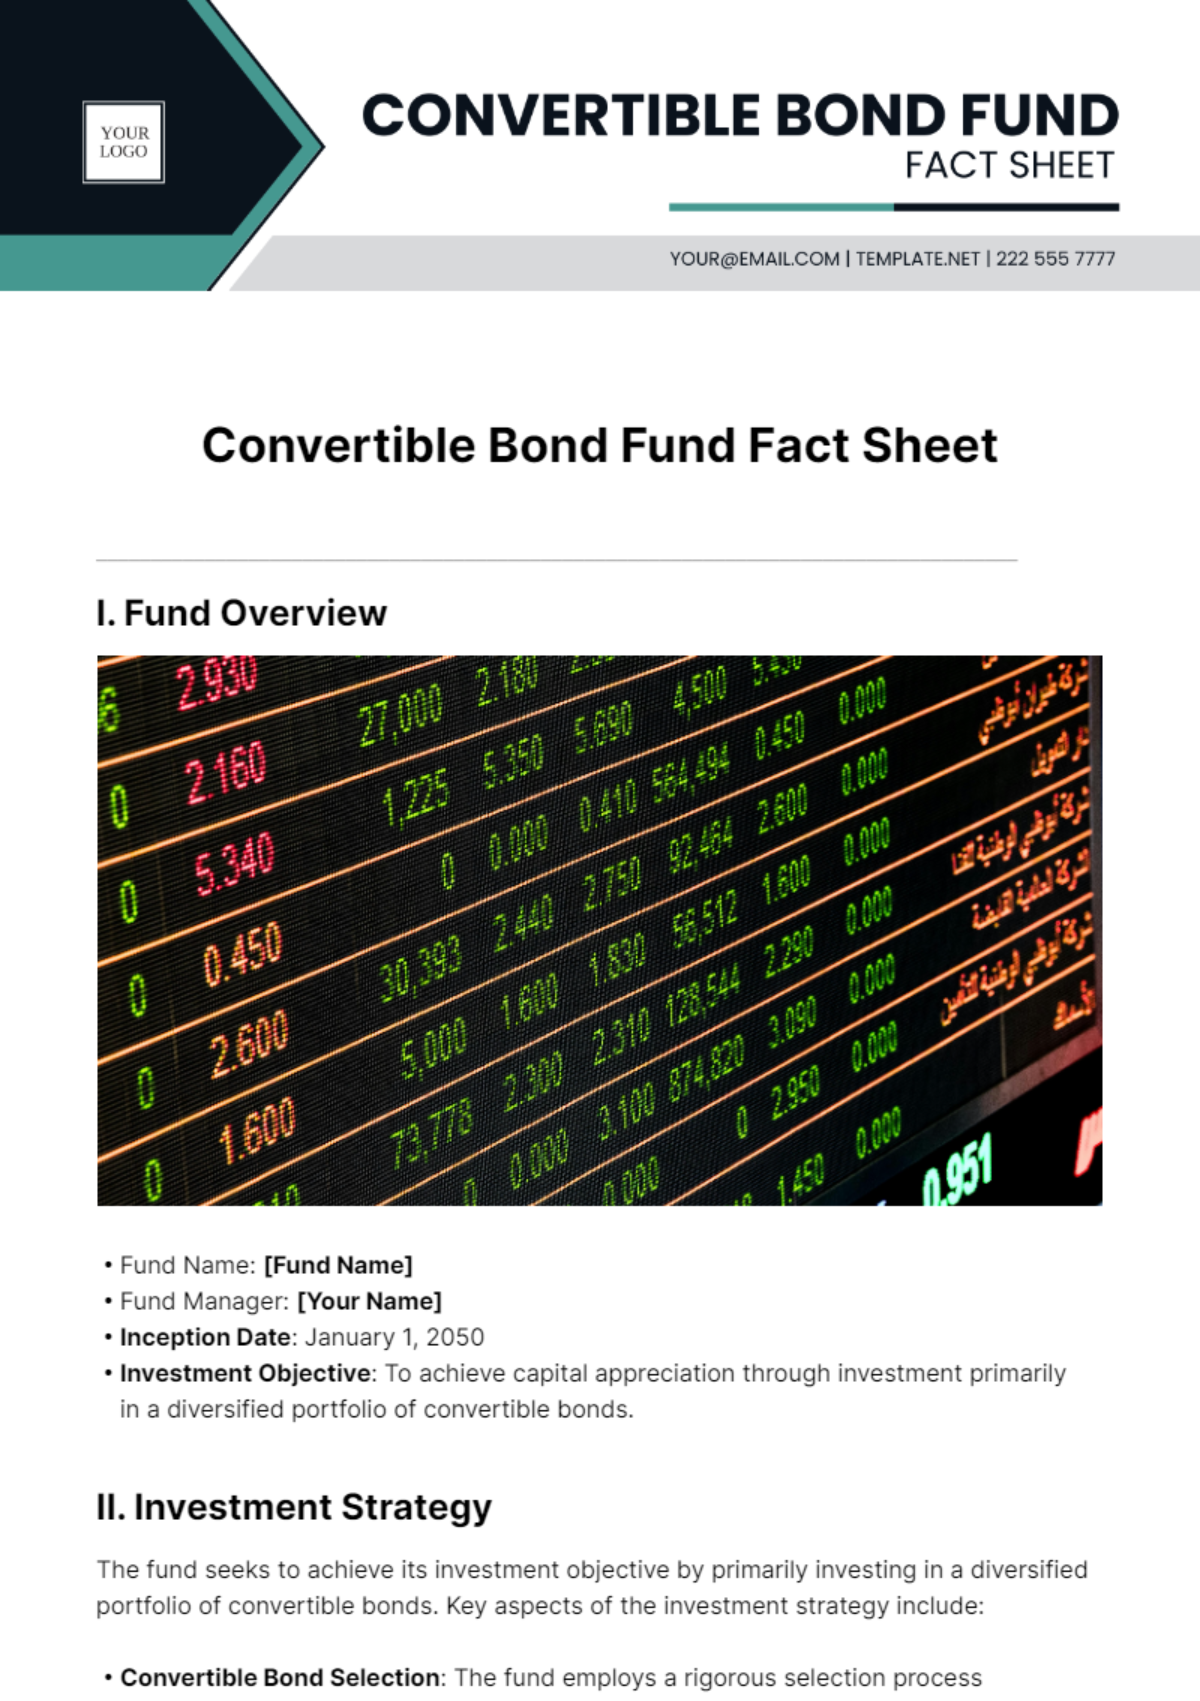 Convertible Bond Fund Fact Sheet Template